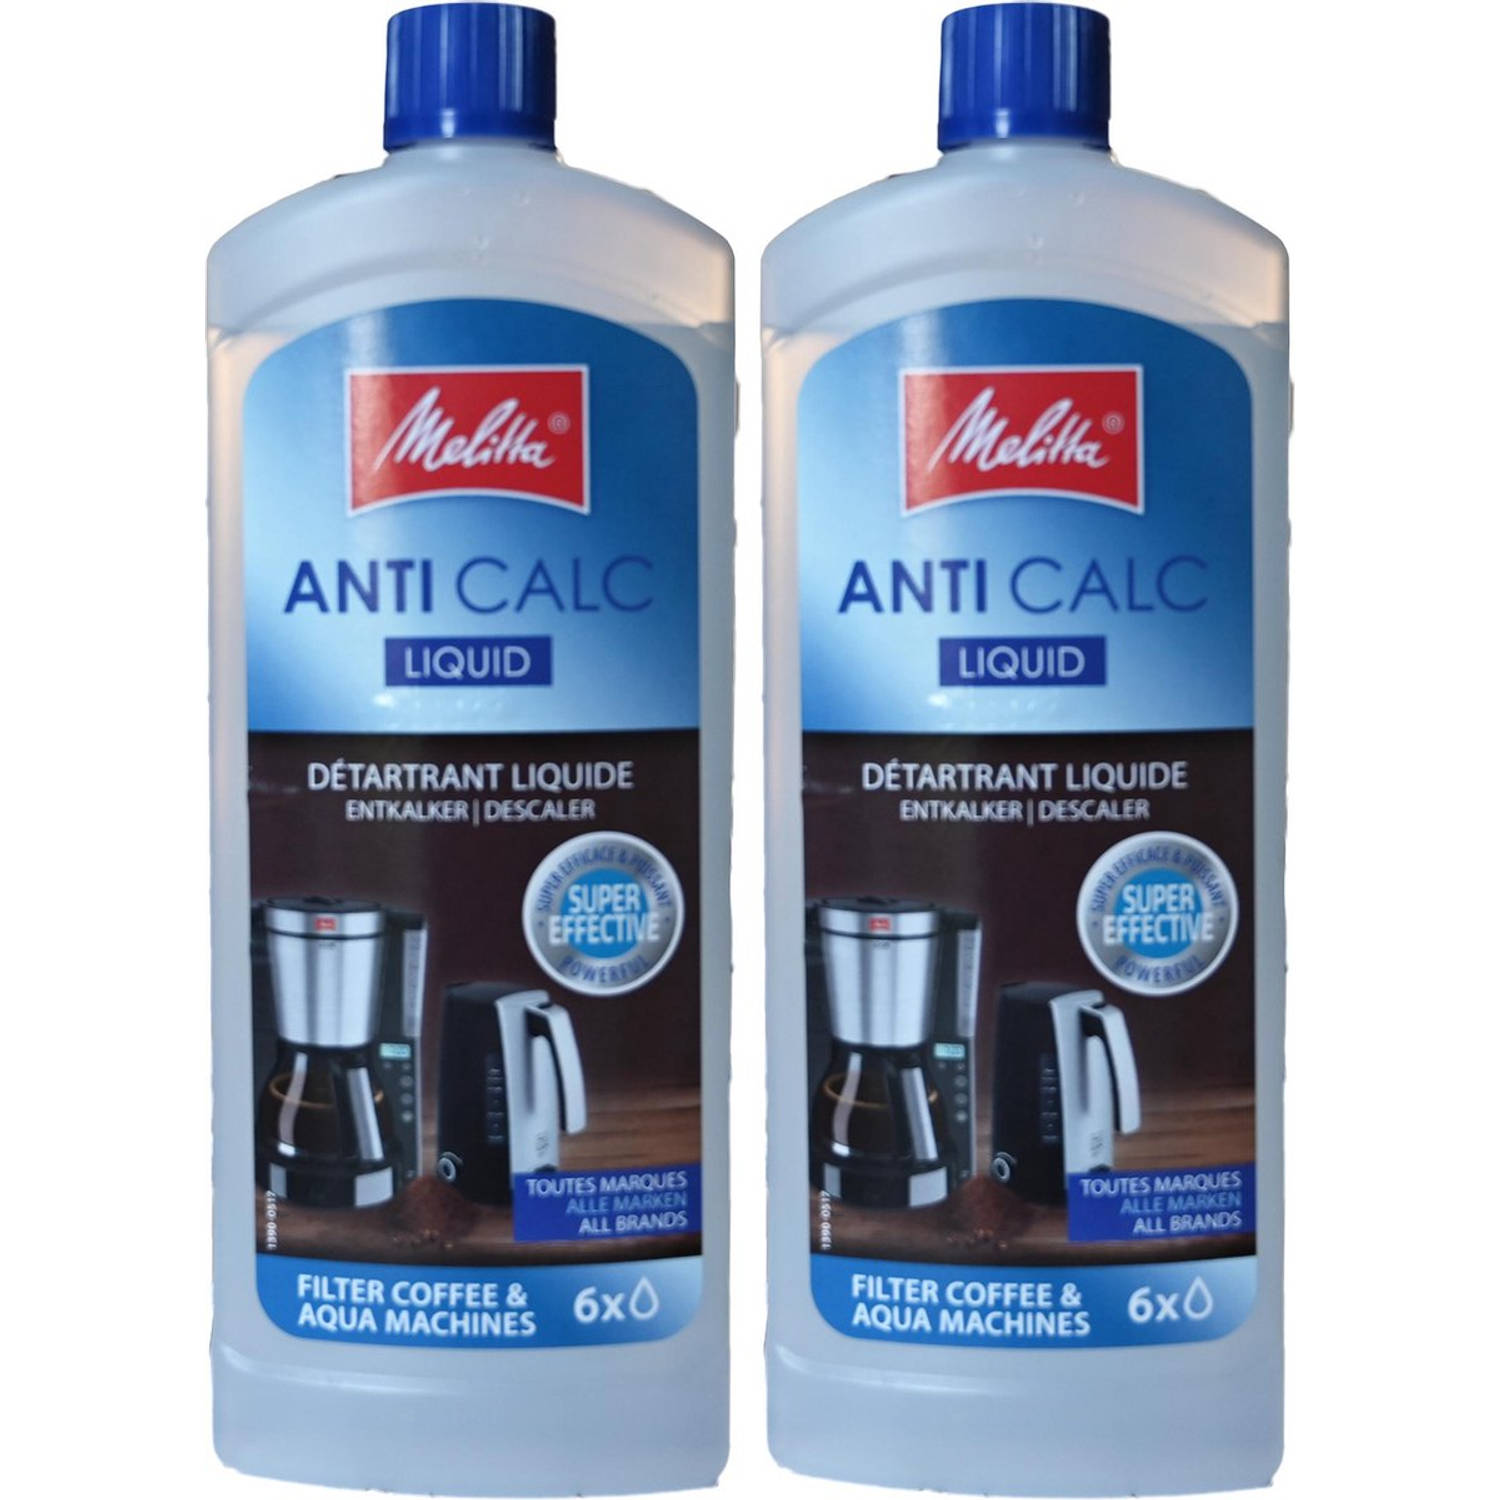 Melitta anti calc vloeistof anti kalk vloeistof ontkalker 2 stuks